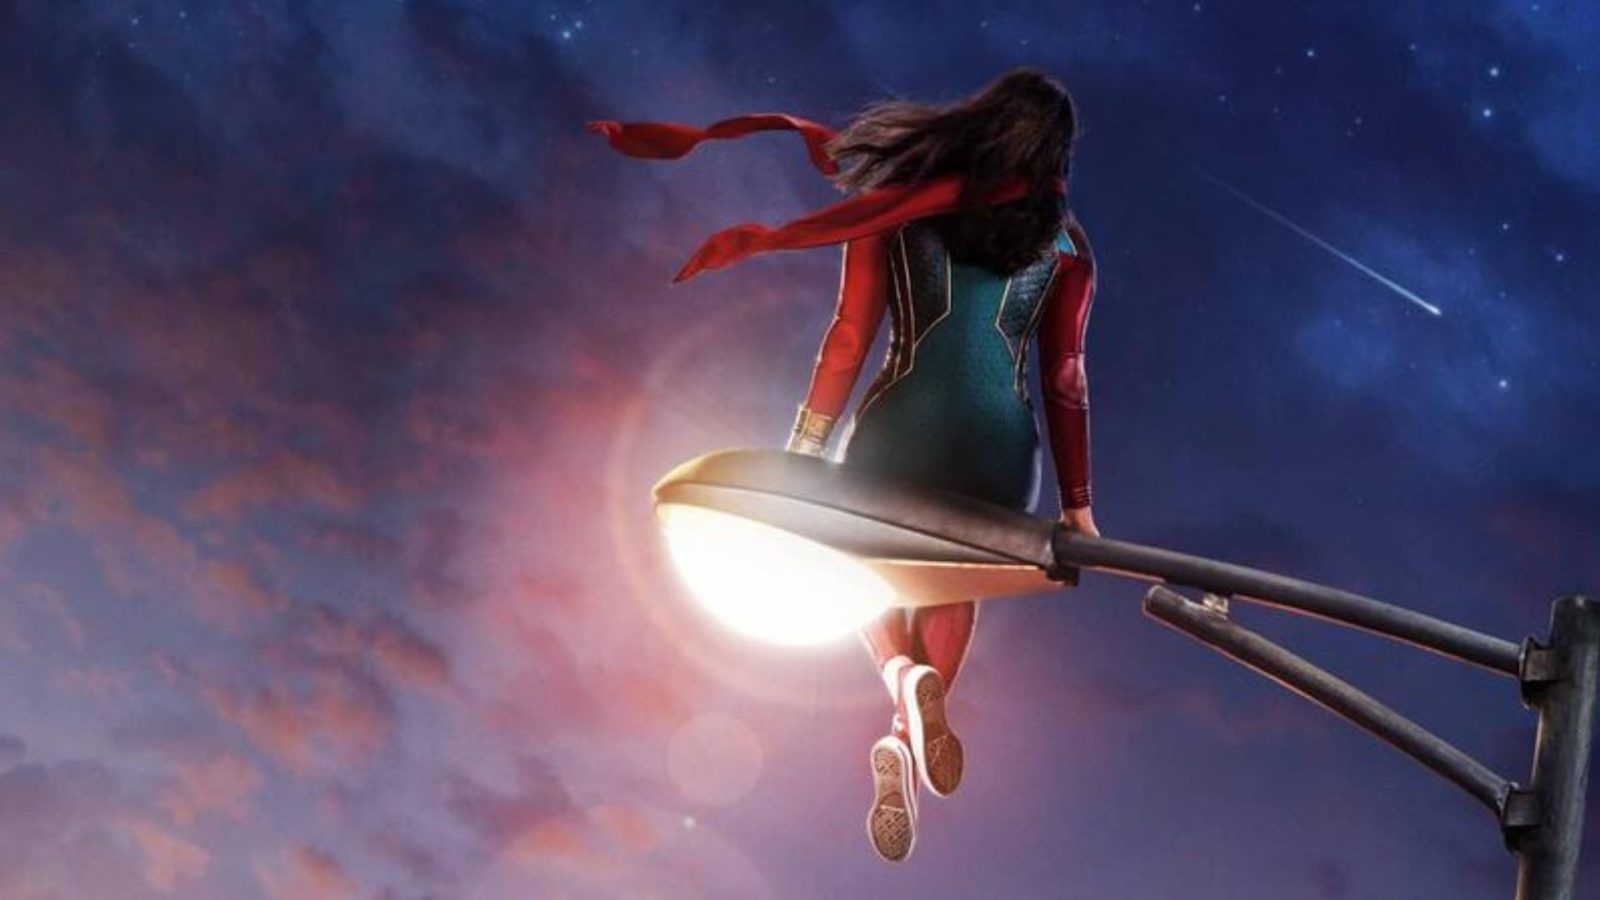 ‘Ms. Marvel’ trailer: Kamala Khan is Marvel’s first Muslim teenage superhero